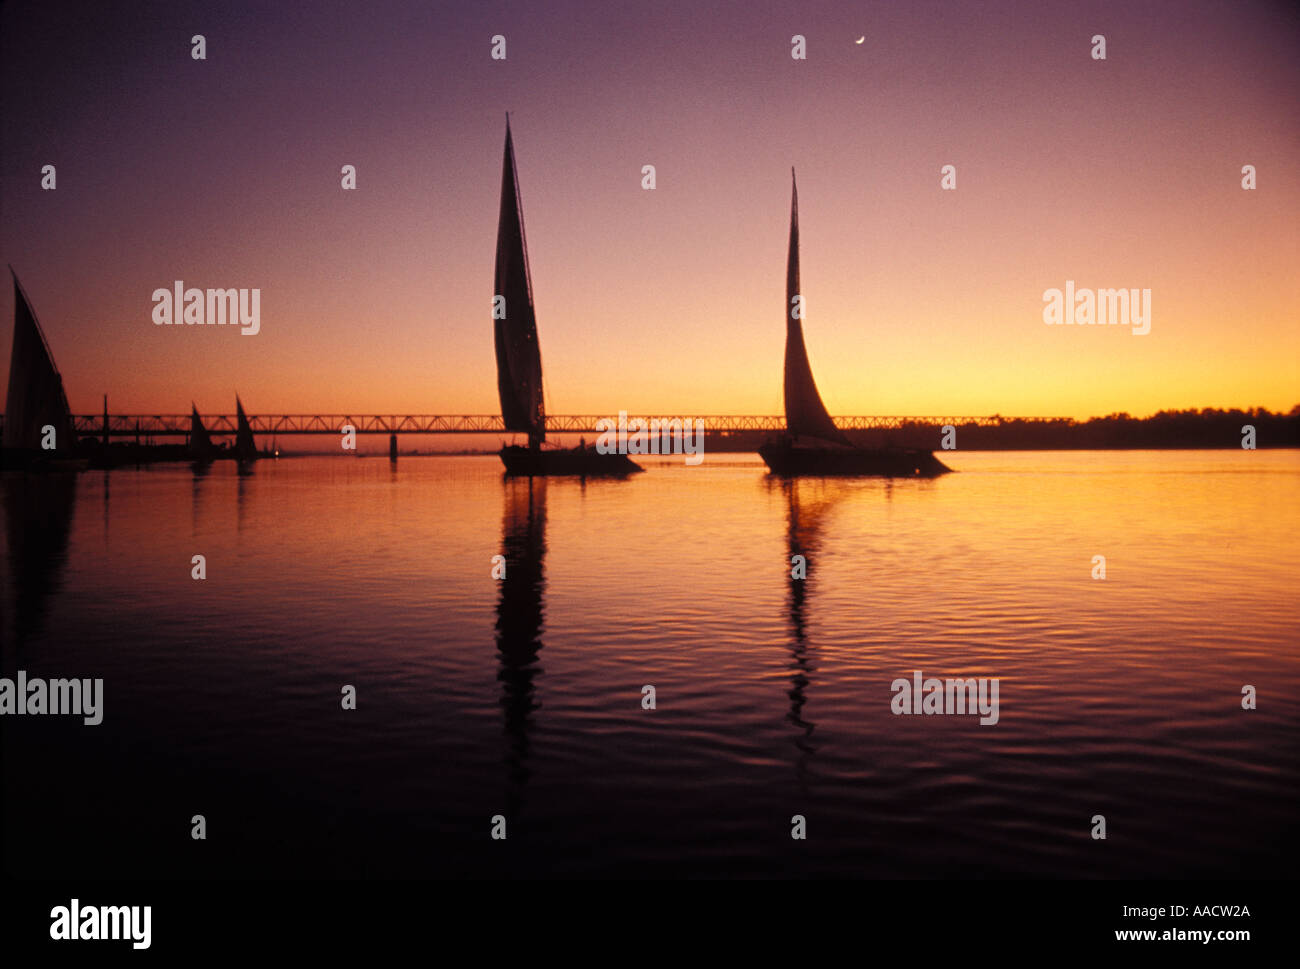 Sonnenuntergang und Mond mit Silhouette und Reflexionen der Fischerboote auf dem Nil in Ägypten Stockfoto